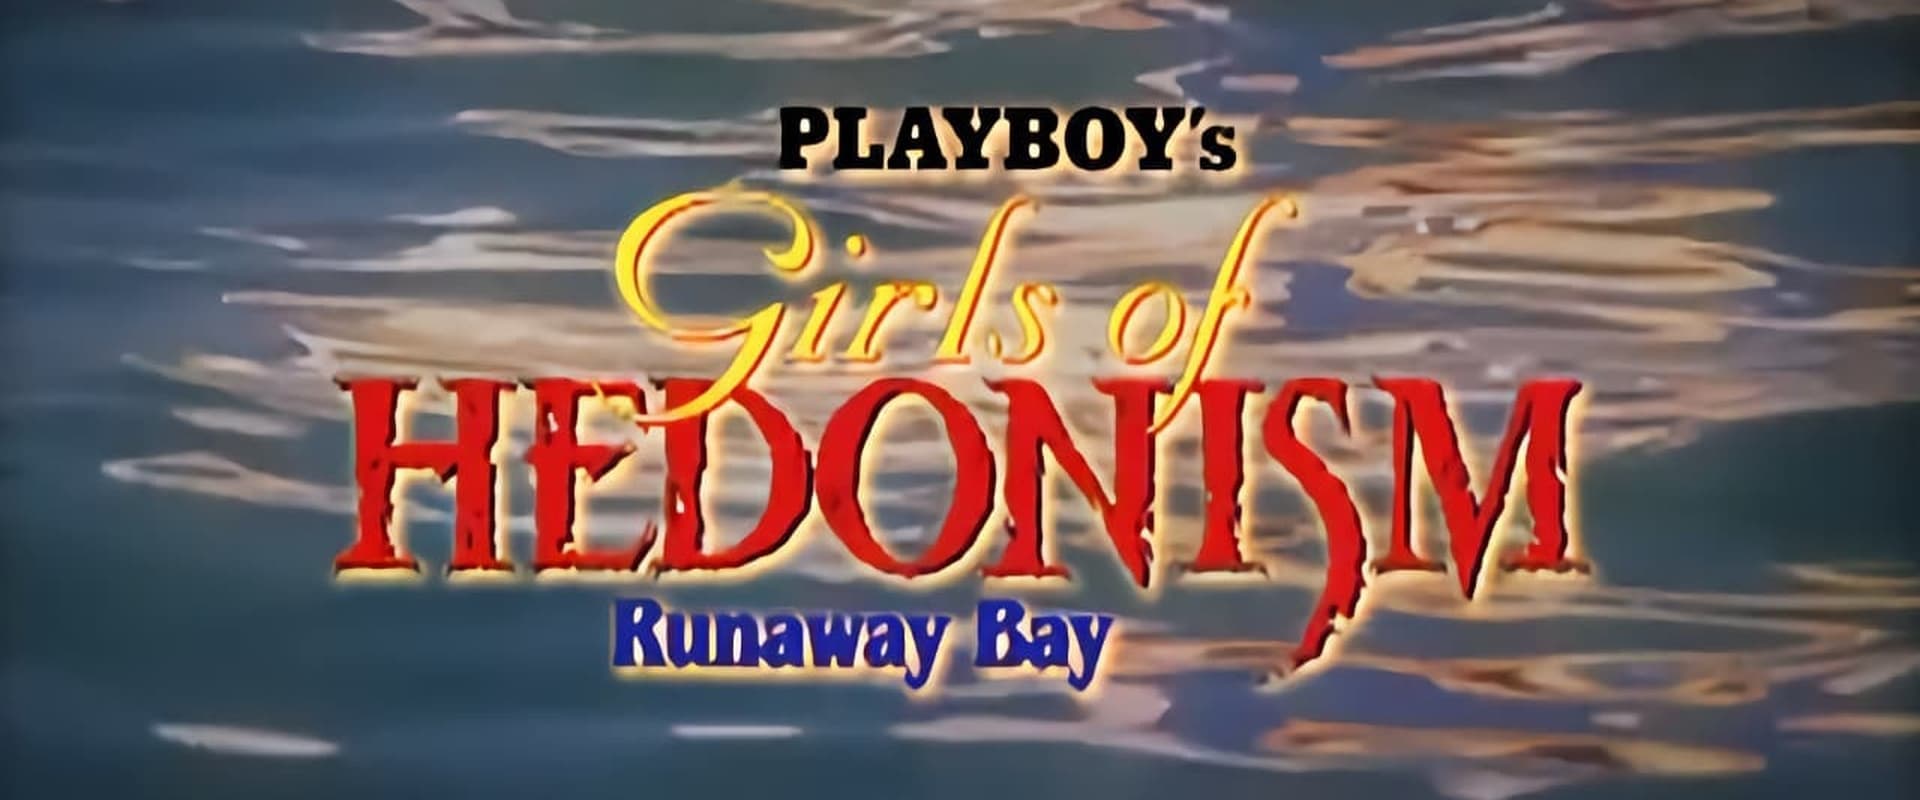 Girls of Hedonism, Runaway Bay Jamaica